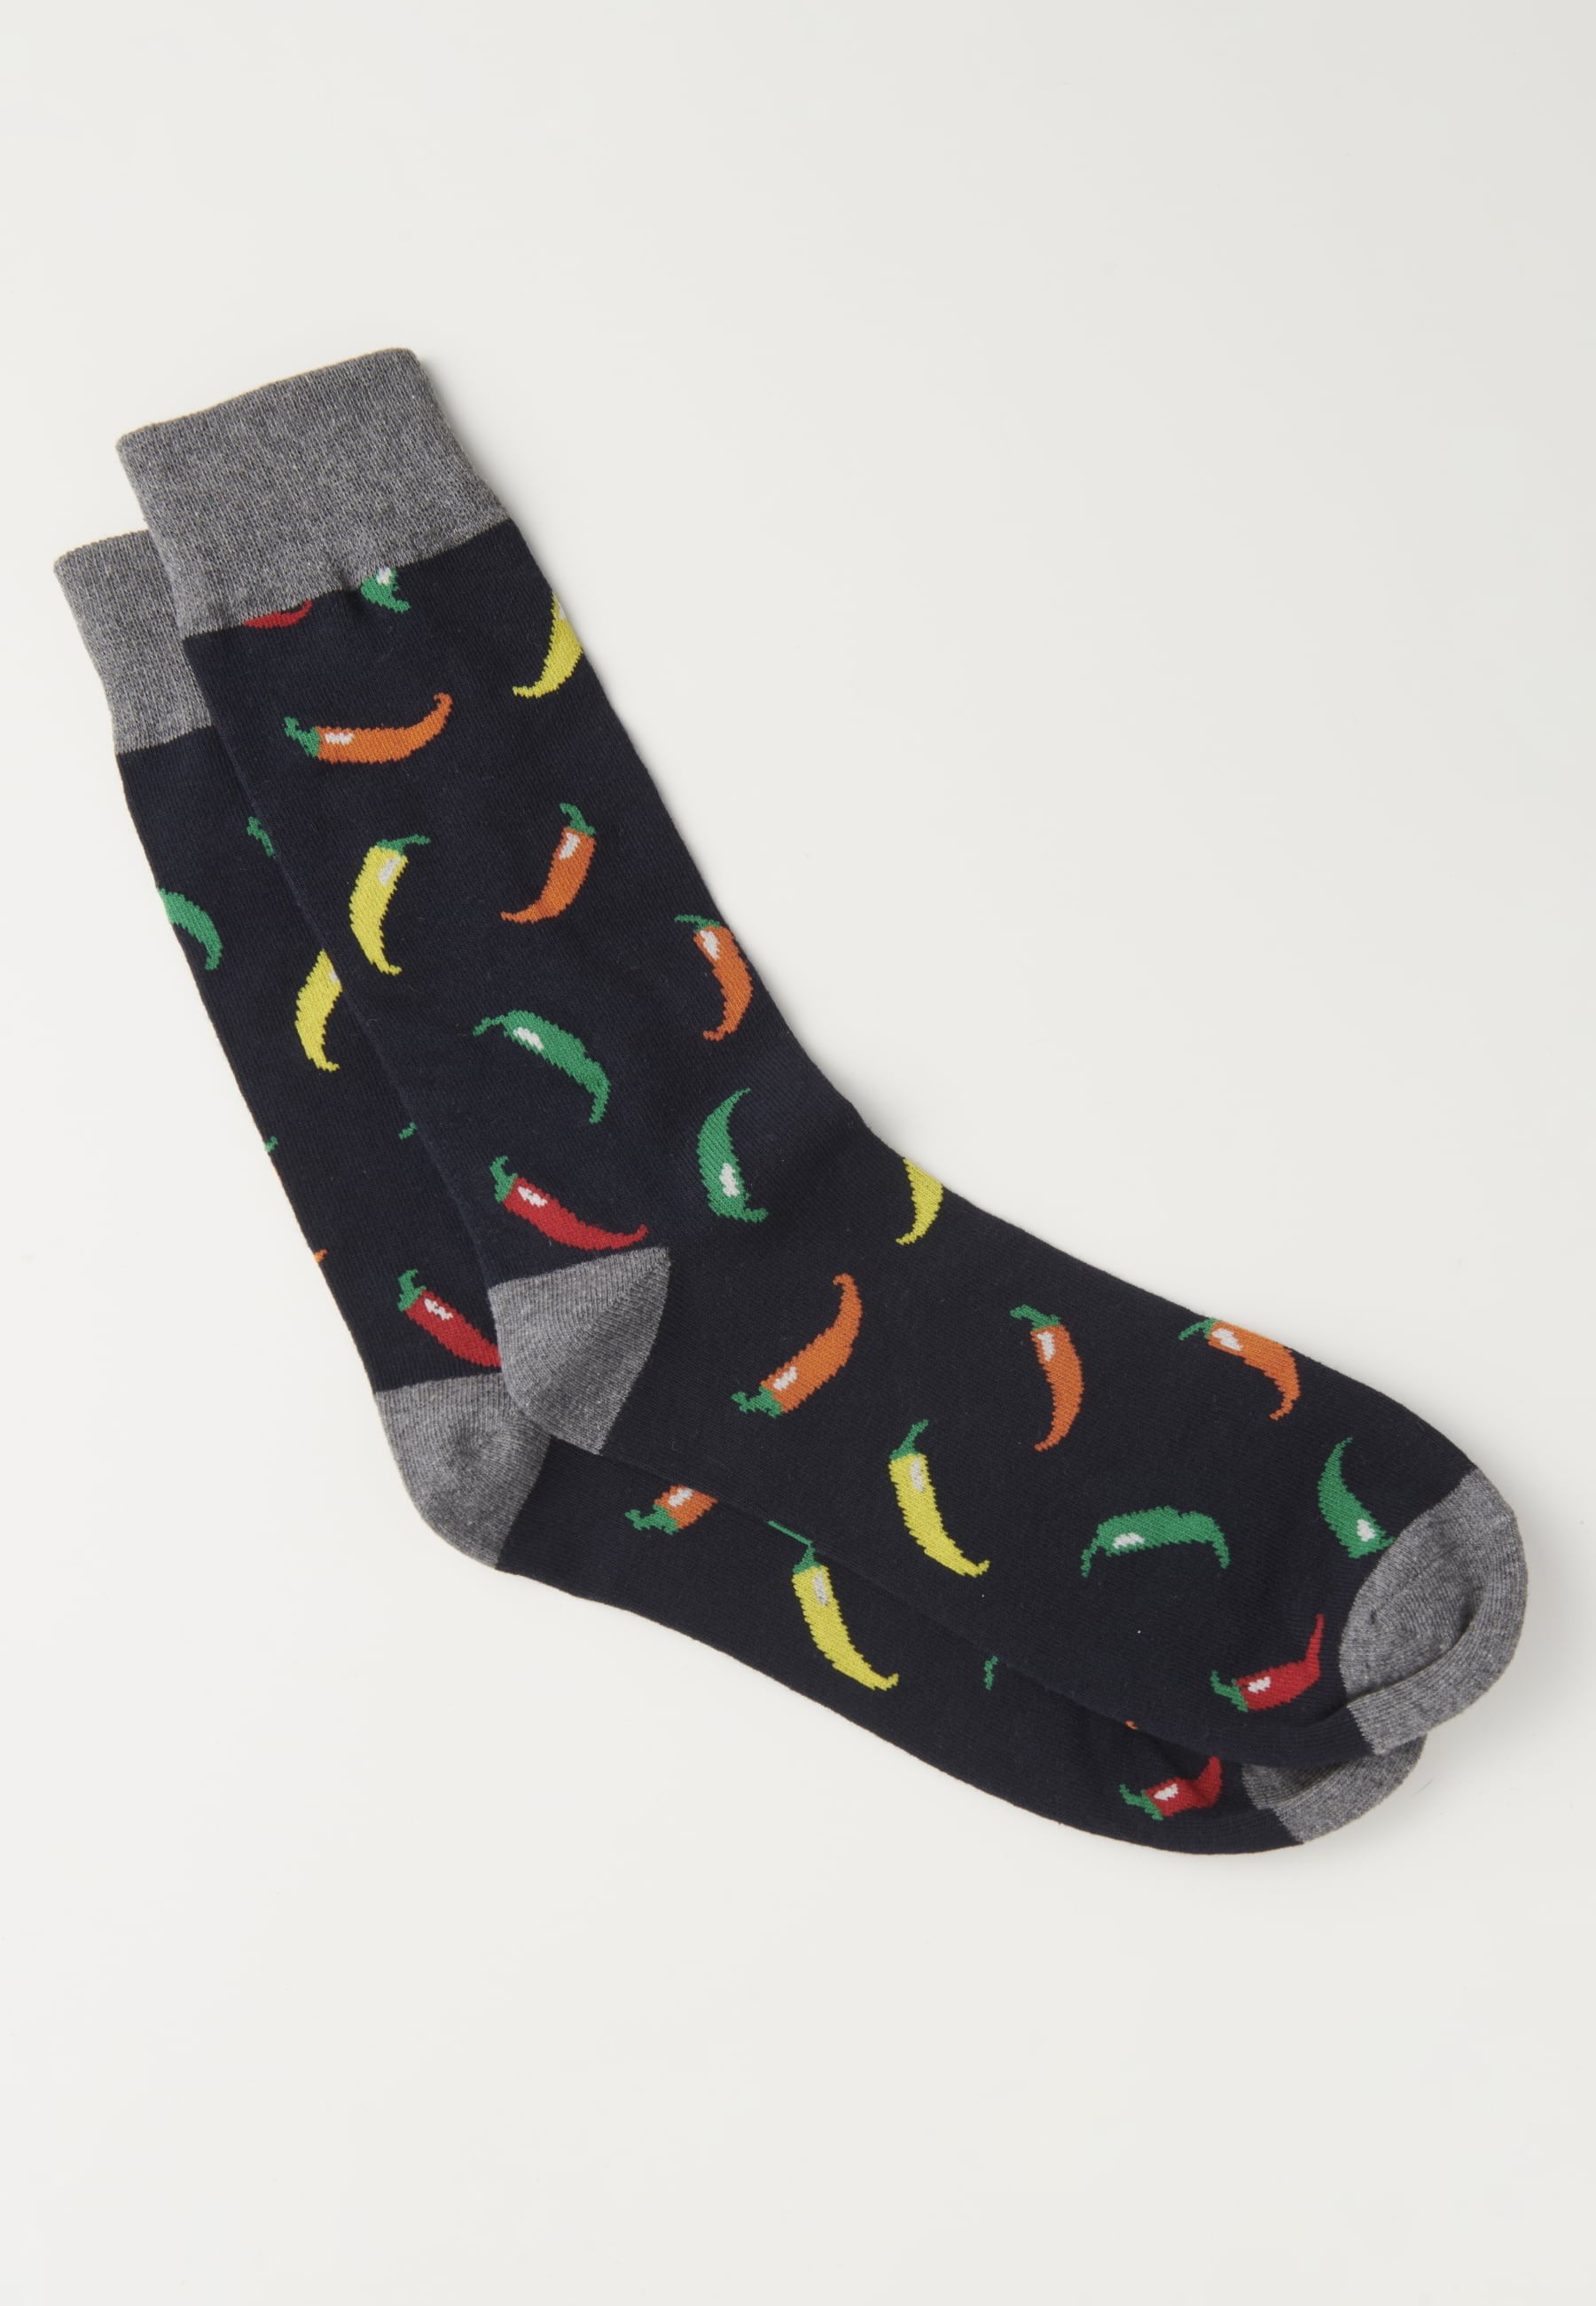 Packung mit drei Socken in verschiedenen Farben für Herren